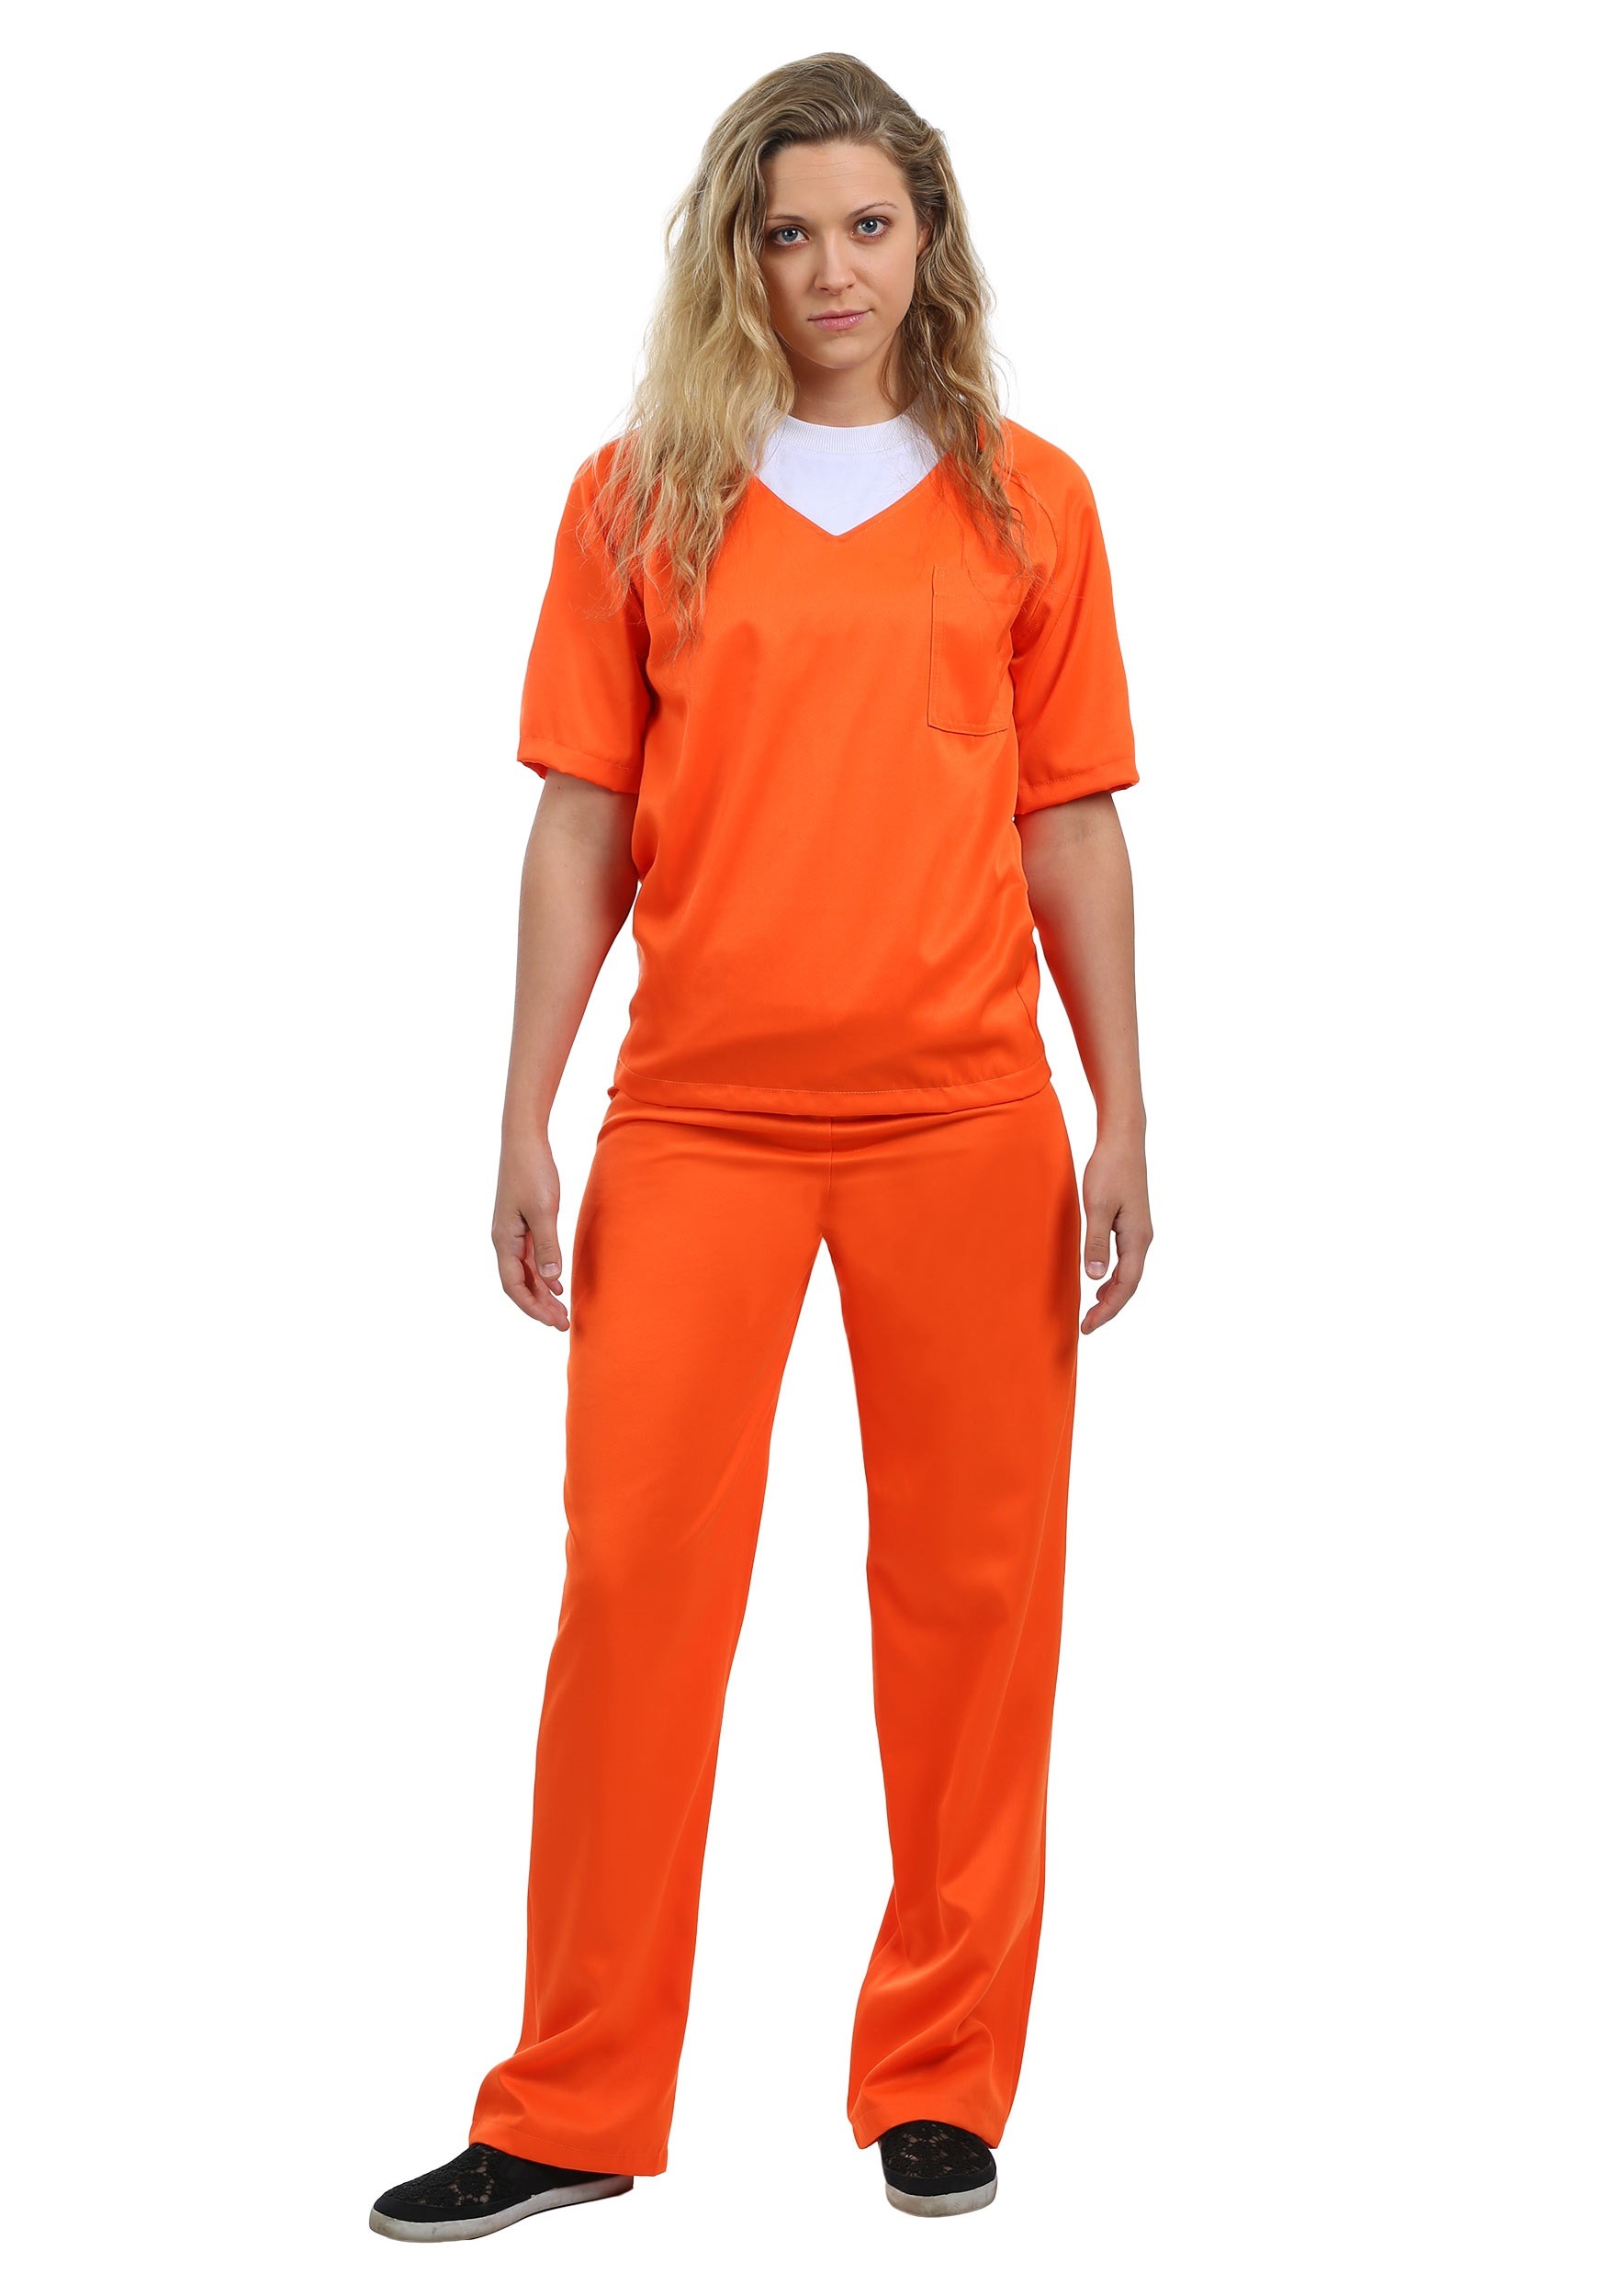 Women's Orange Prisoner Fancy Dress Costume